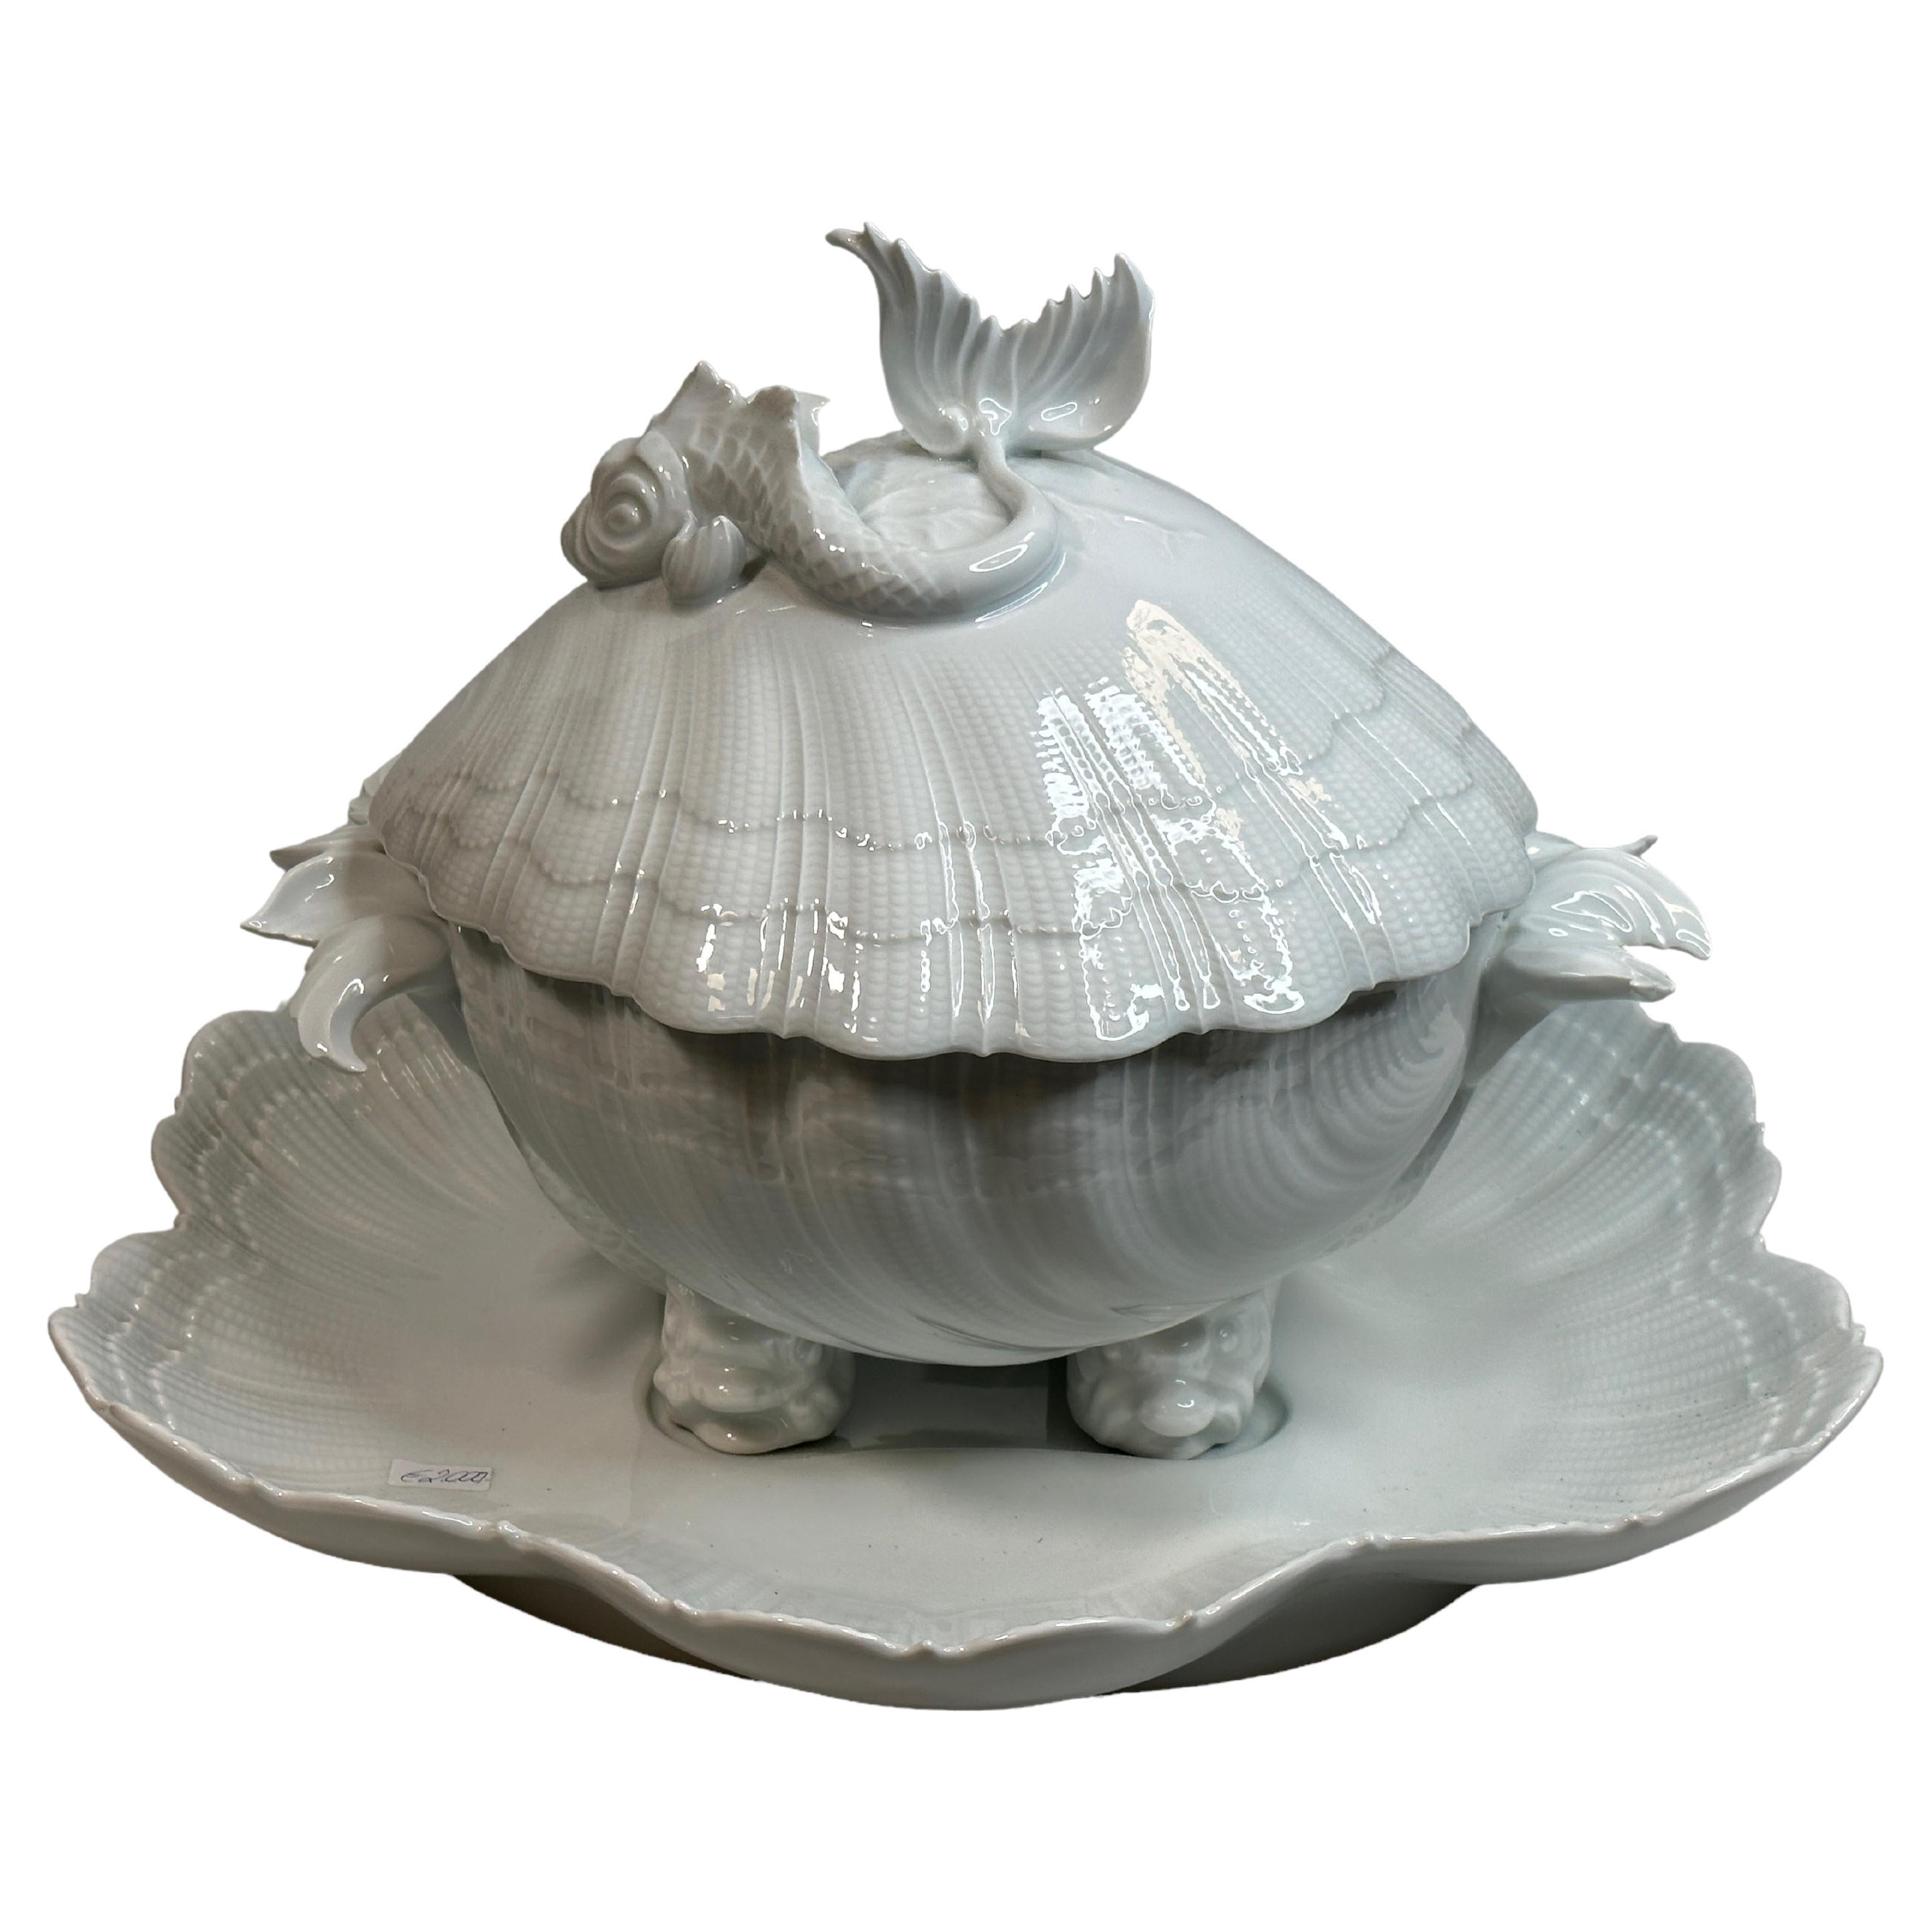 Soupière de Limoges en porcelaine exceptionnelle en forme de coquillage avec décor de dauphin